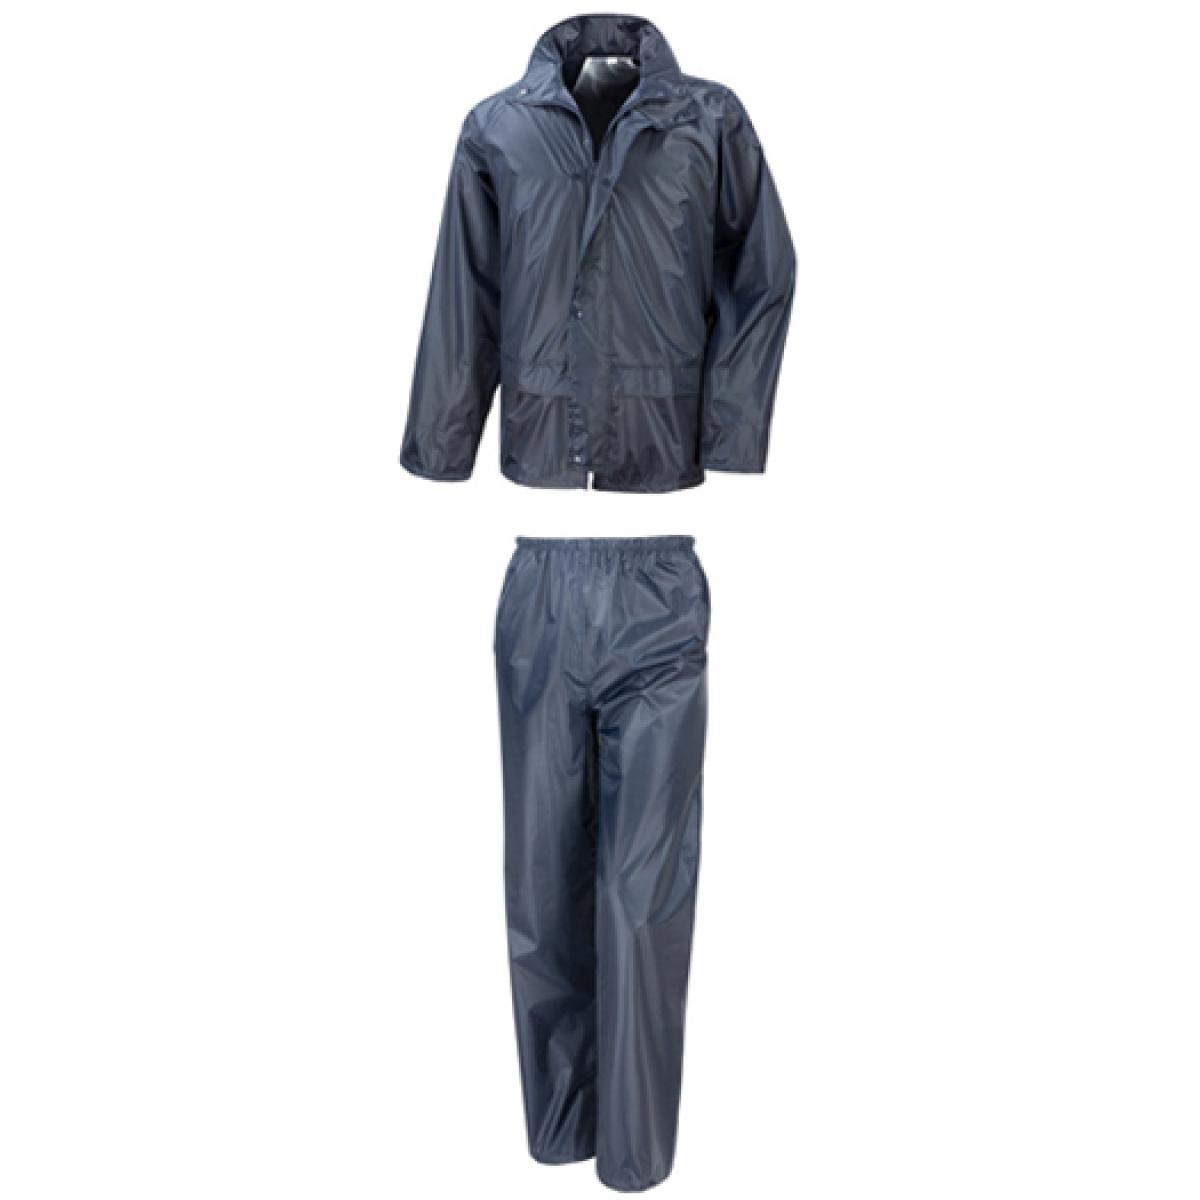 Hersteller: Result Core Herstellernummer: R225X Artikelbezeichnung: Rain Suit Farbe: Navy